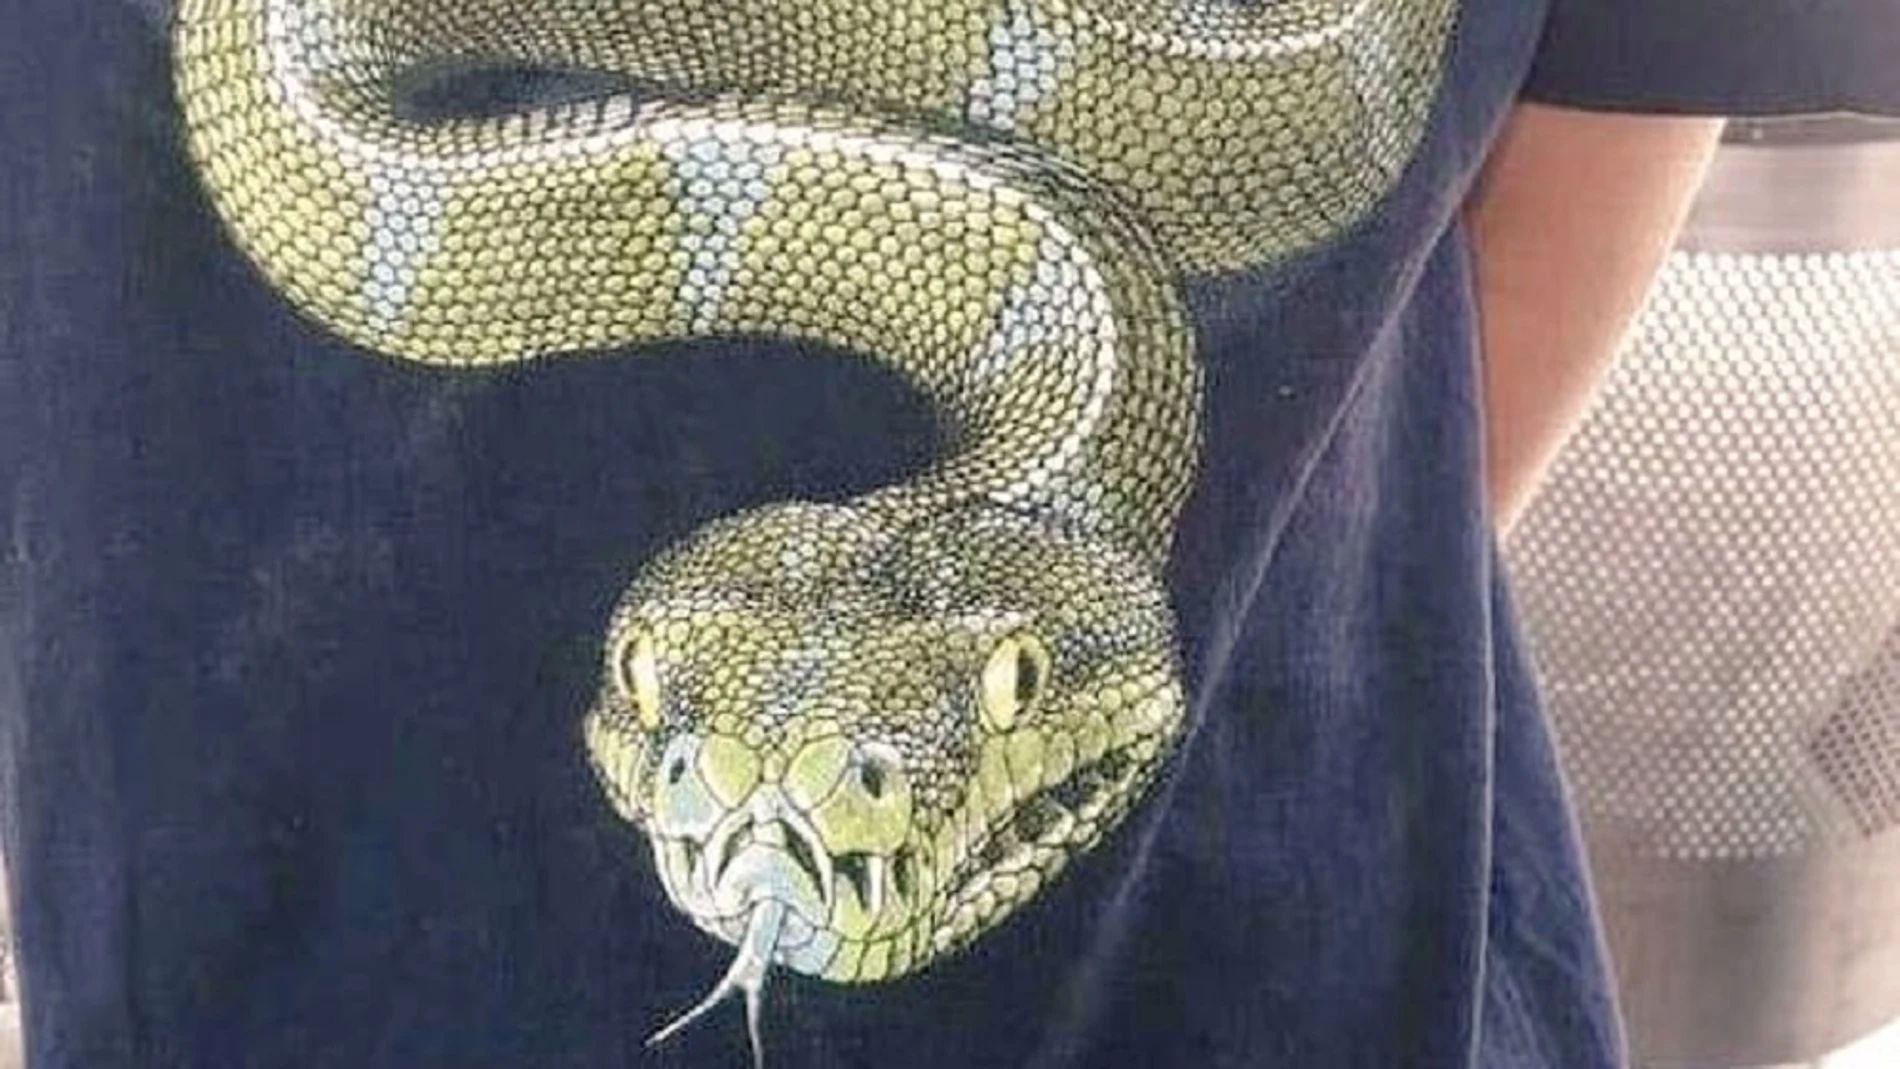 Imagen de la camiseta de Stevie con la imagen de una serpiente.